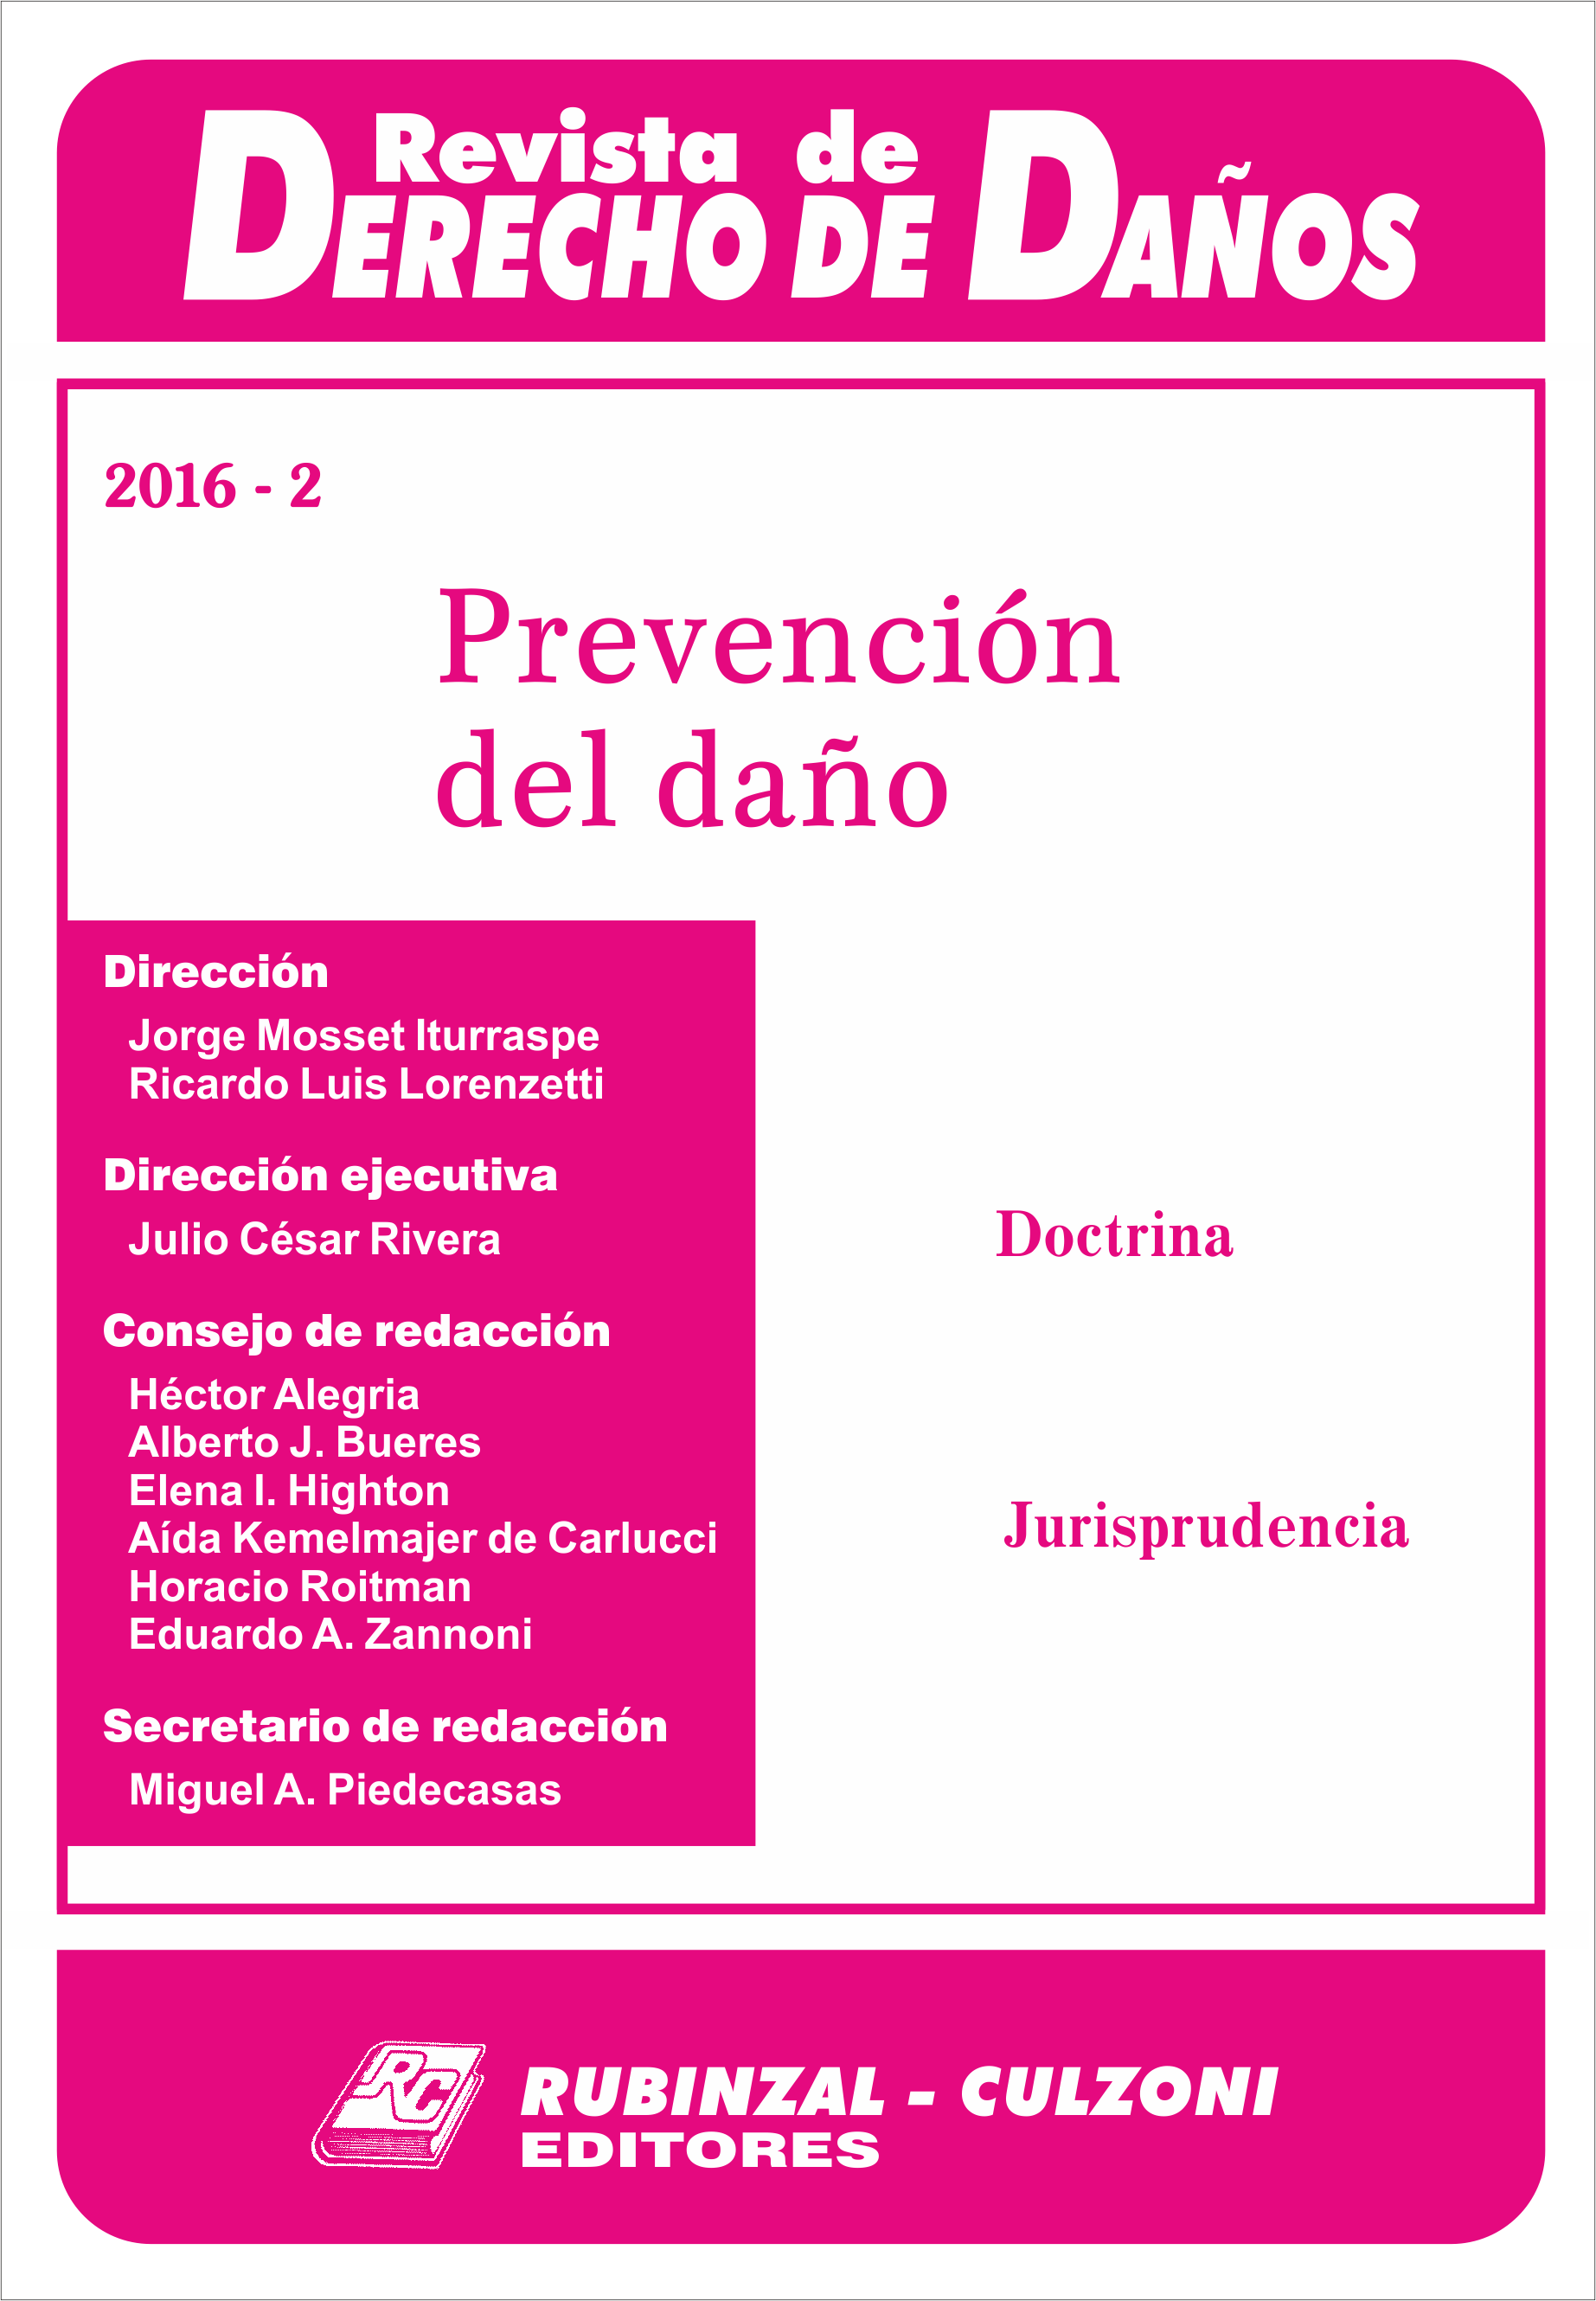 Revista de Derecho de Daños - Prevención del daño